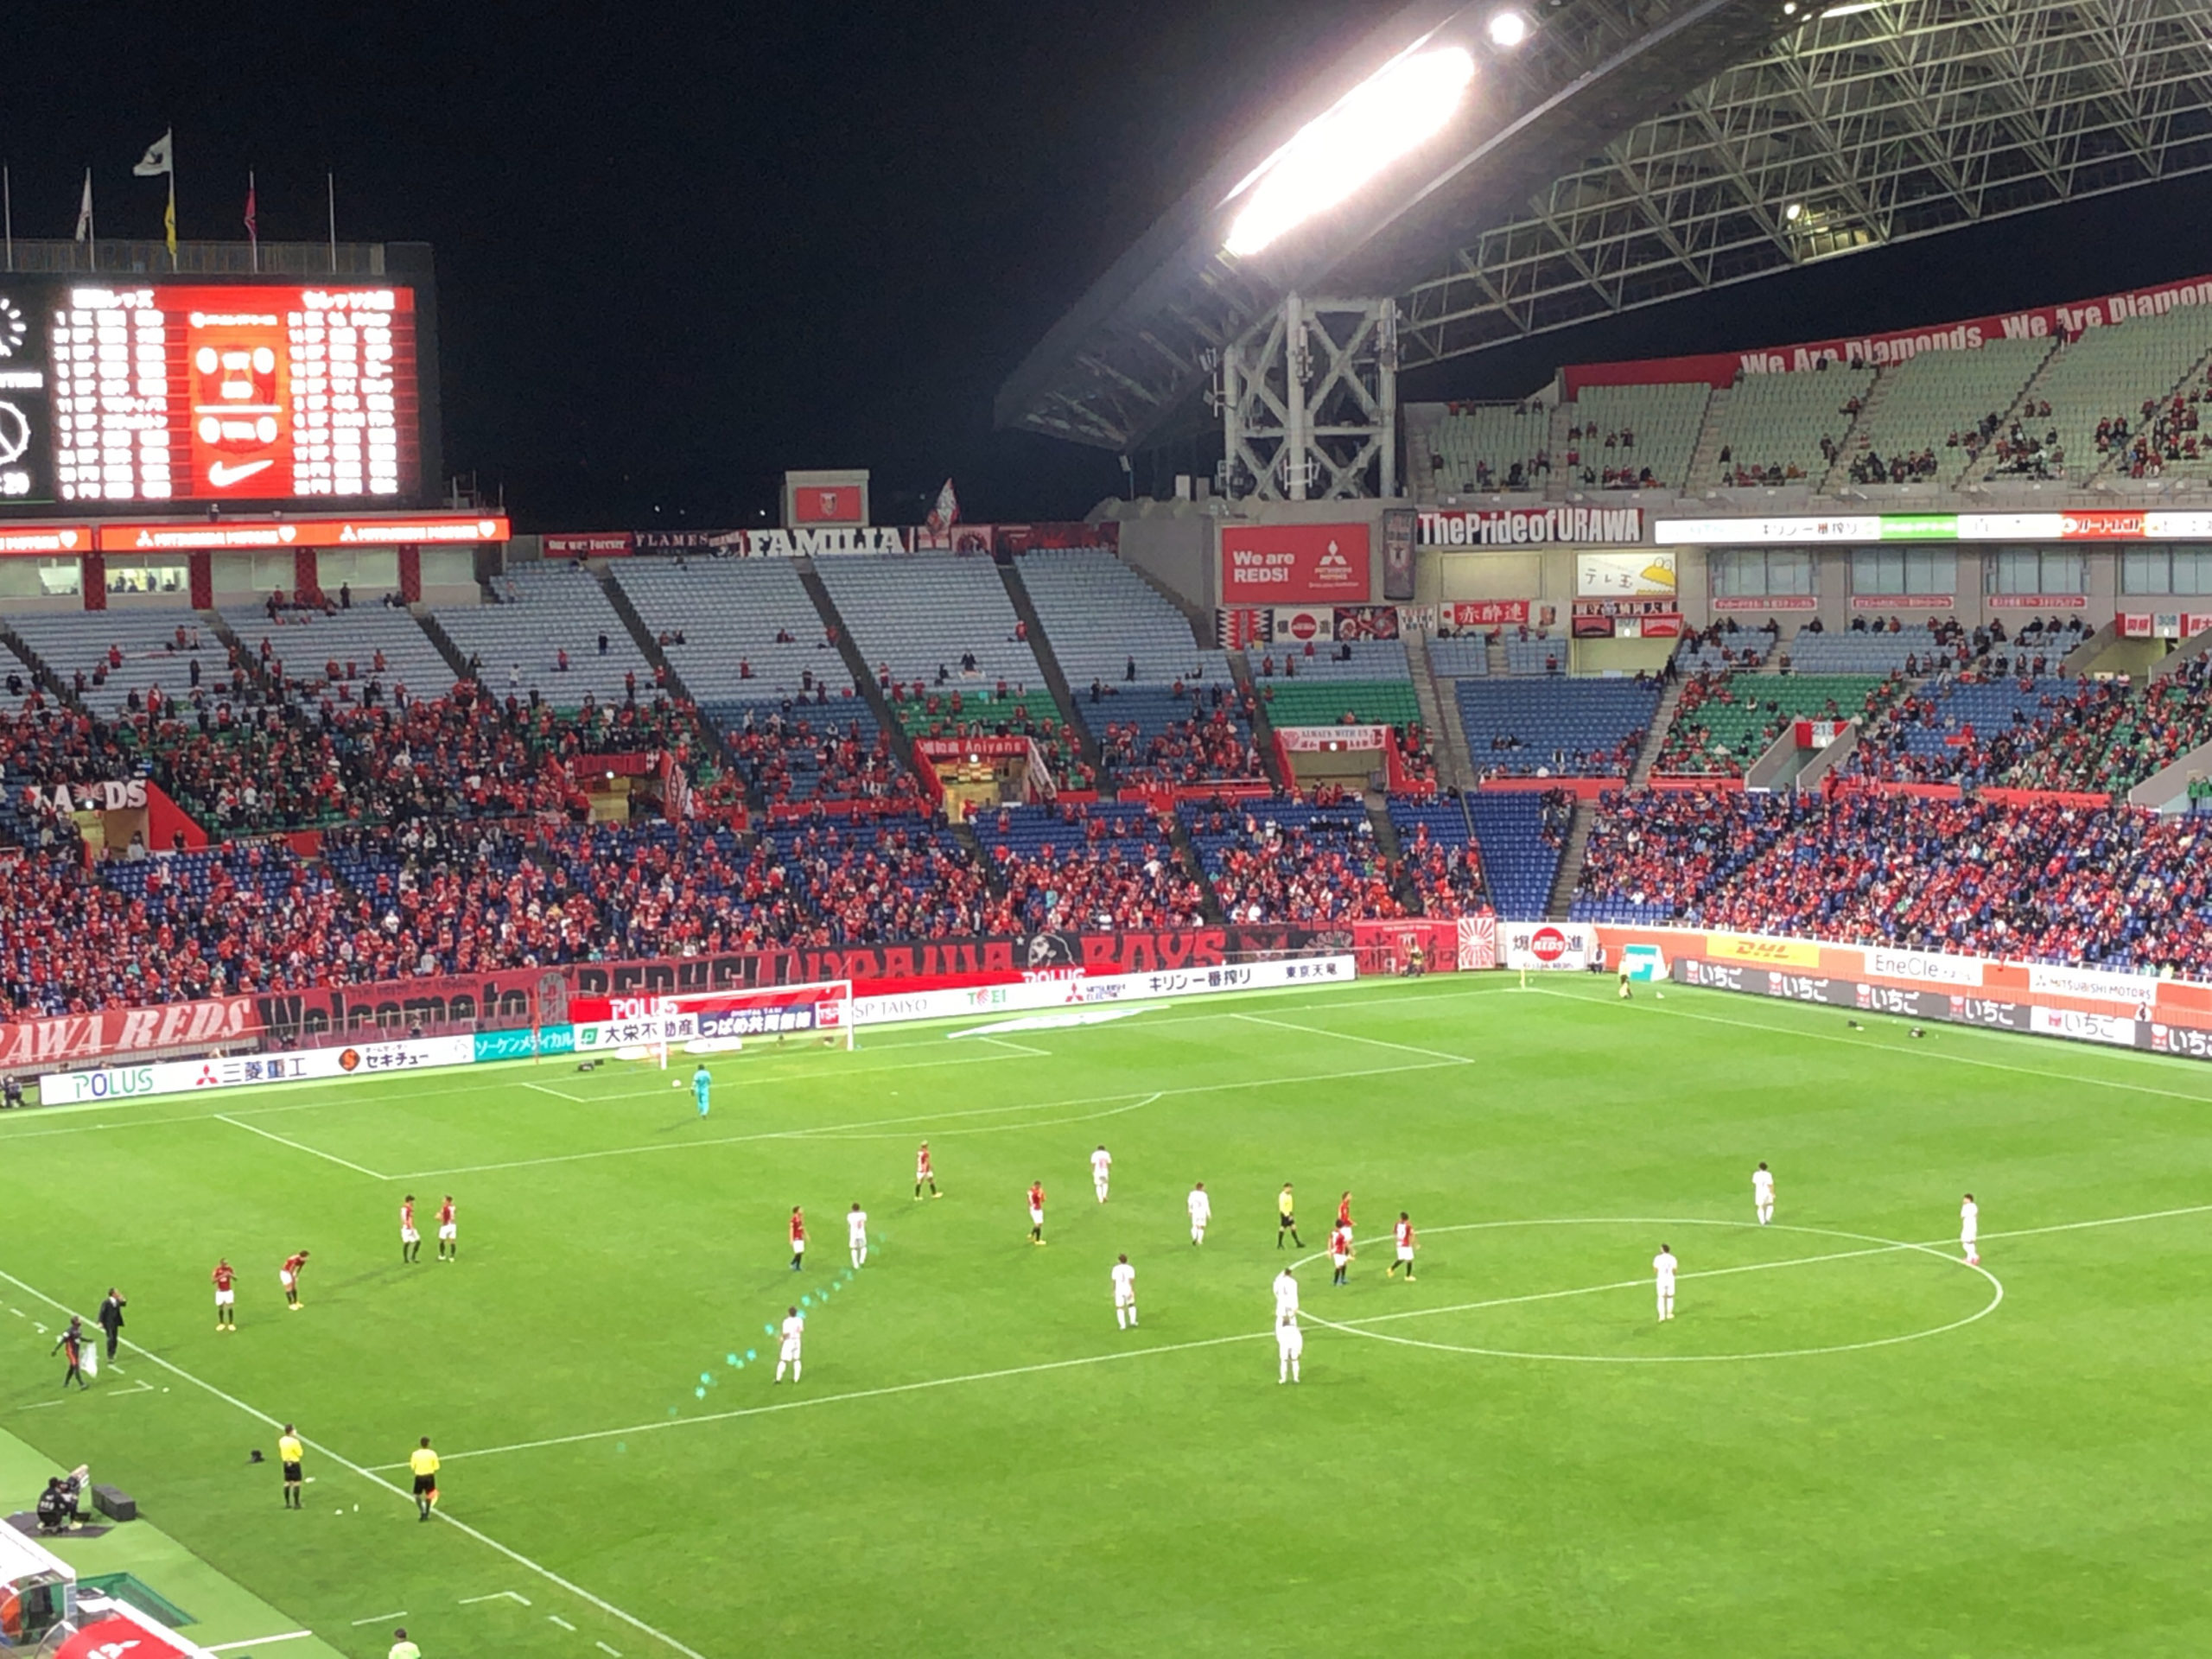 コロナ下のサッカー観戦 埼玉スタジアム02へ 対策は 座席は 応援は サッカー好きサラリーマンの株ブログ